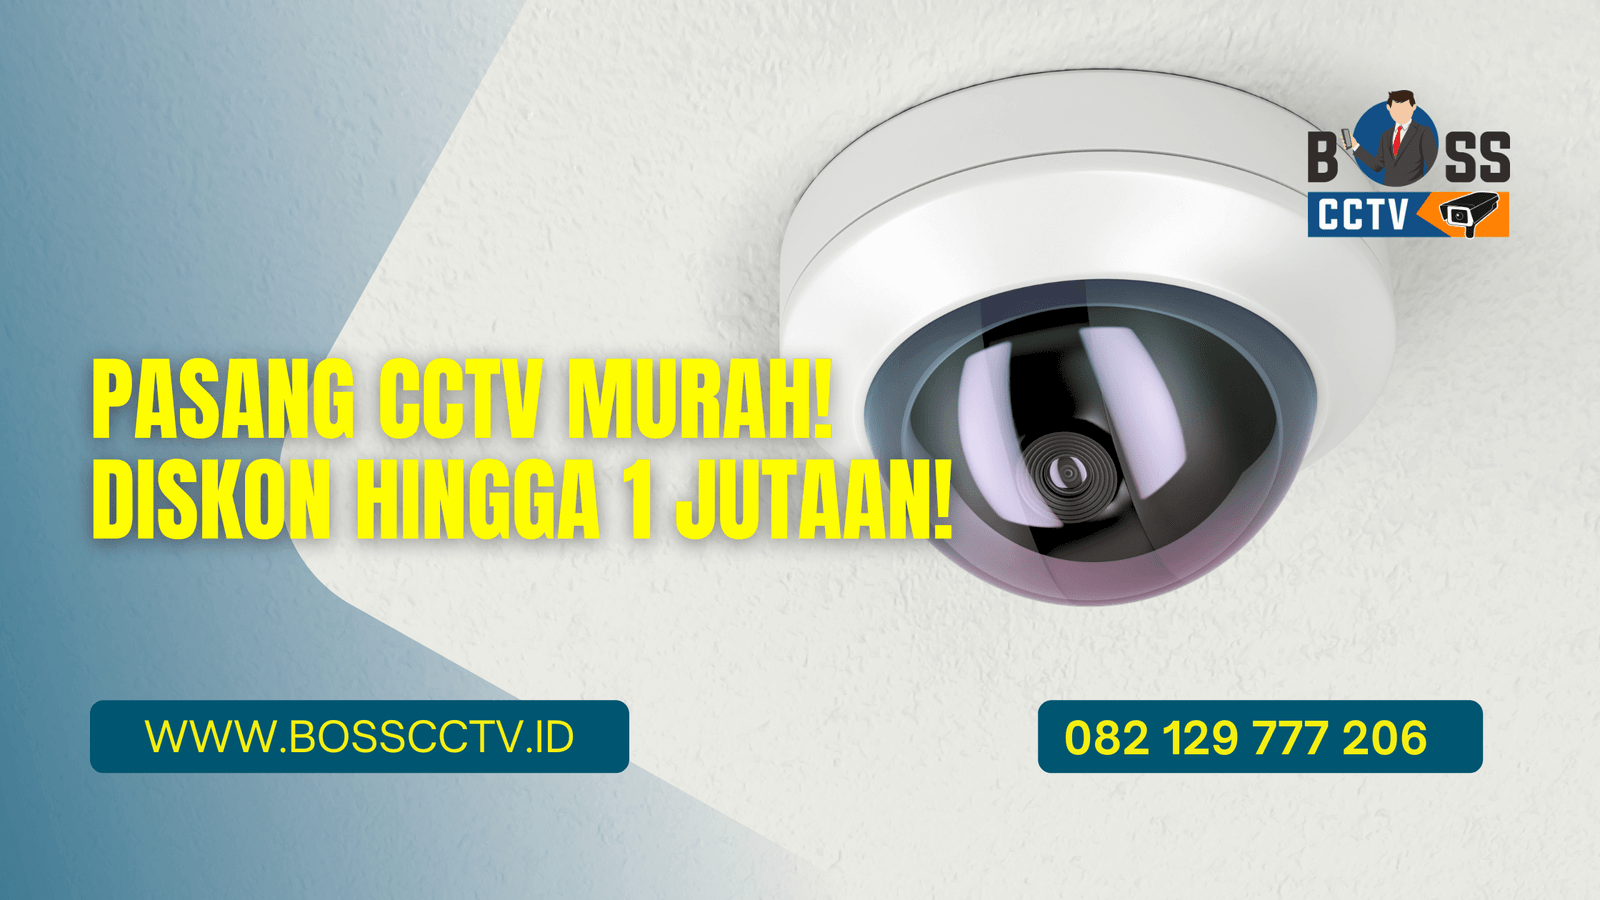 Pasang CCTV Murah! Diskon Hingga 1 Jutaan